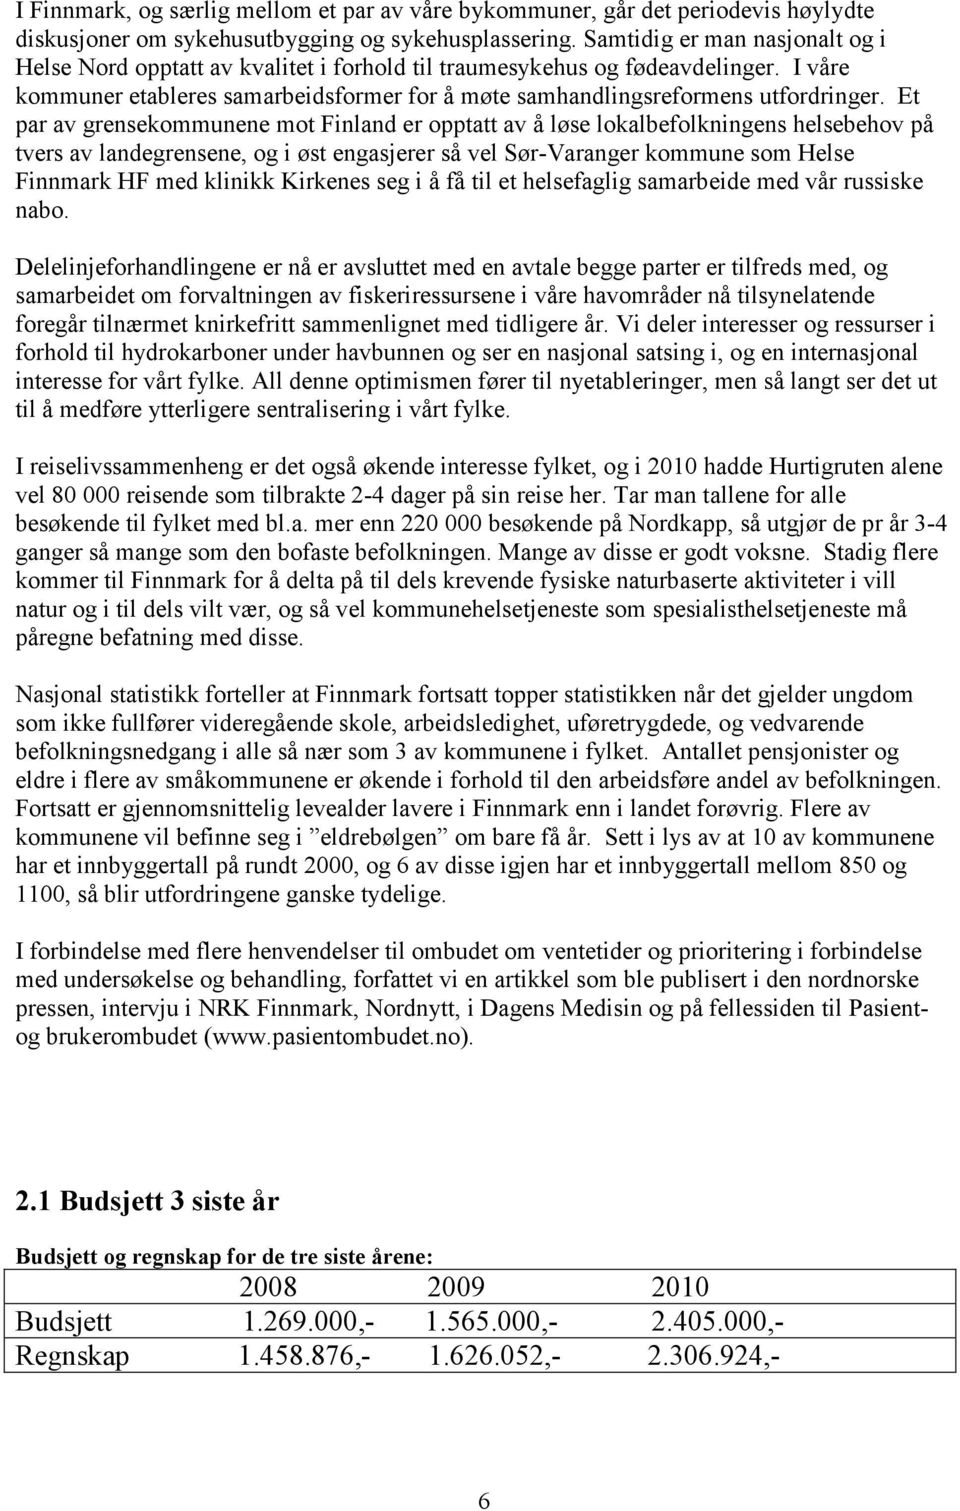 Et par av grensekommunene mot Finland er opptatt av å løse lokalbefolkningens helsebehov på tvers av landegrensene, og i øst engasjerer så vel Sør-Varanger kommune som Helse Finnmark HF med klinikk